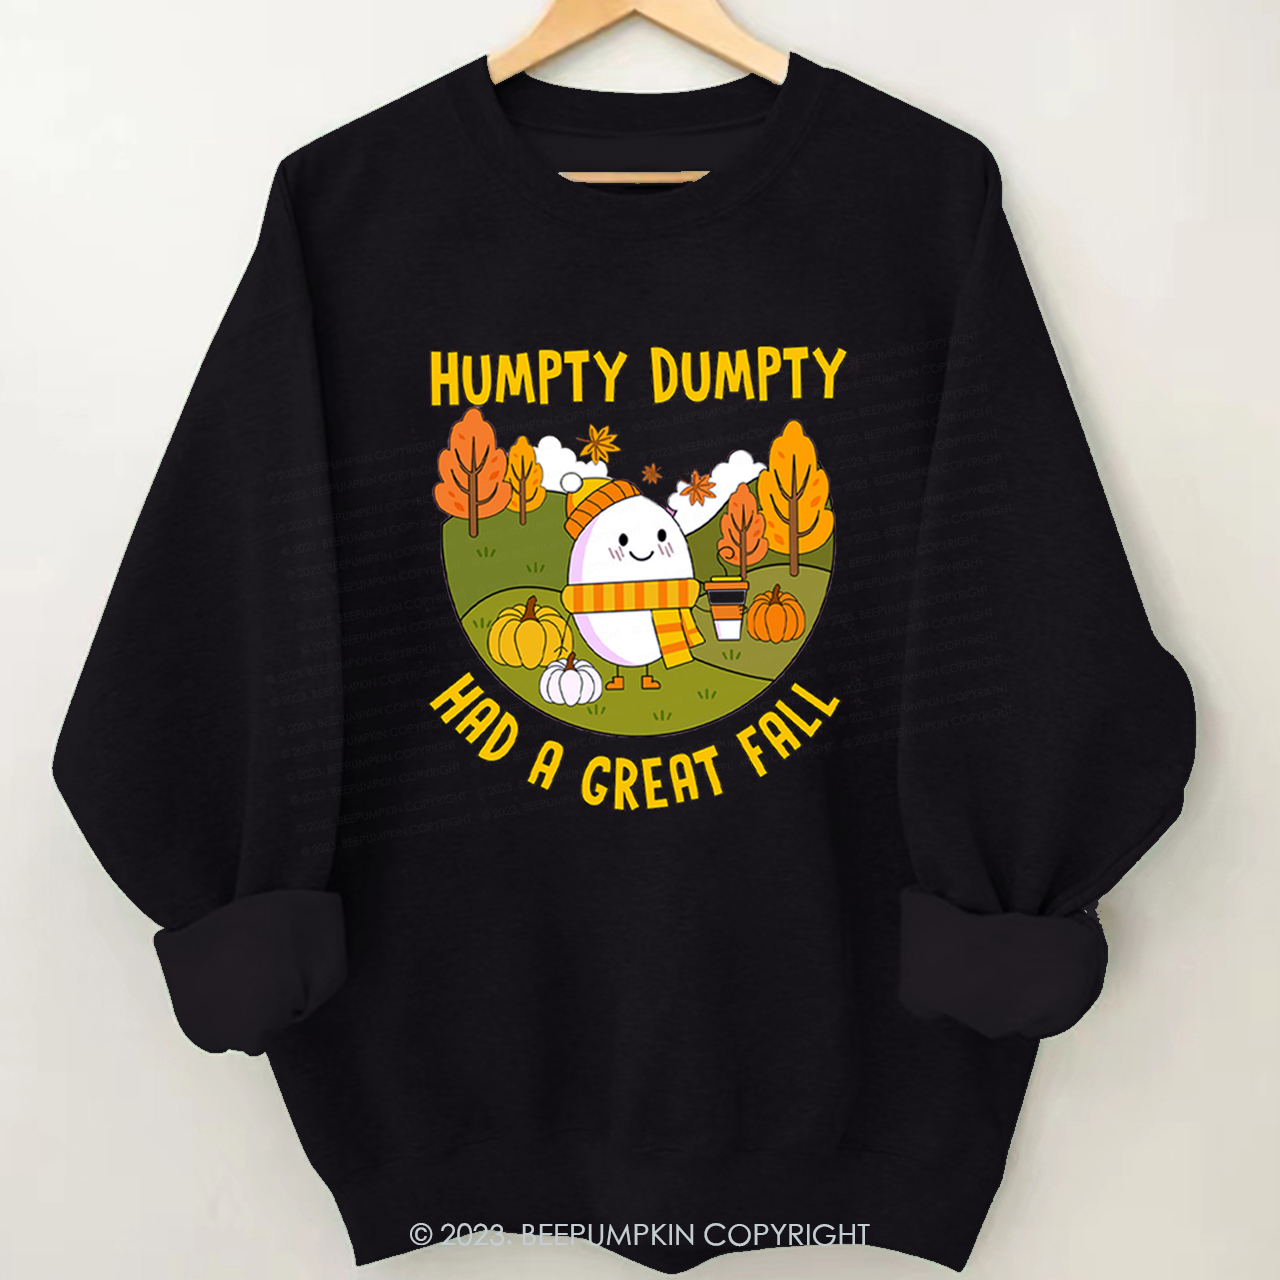 Humpty Dumpty Had A Great Sweatshirt Beepumpkin